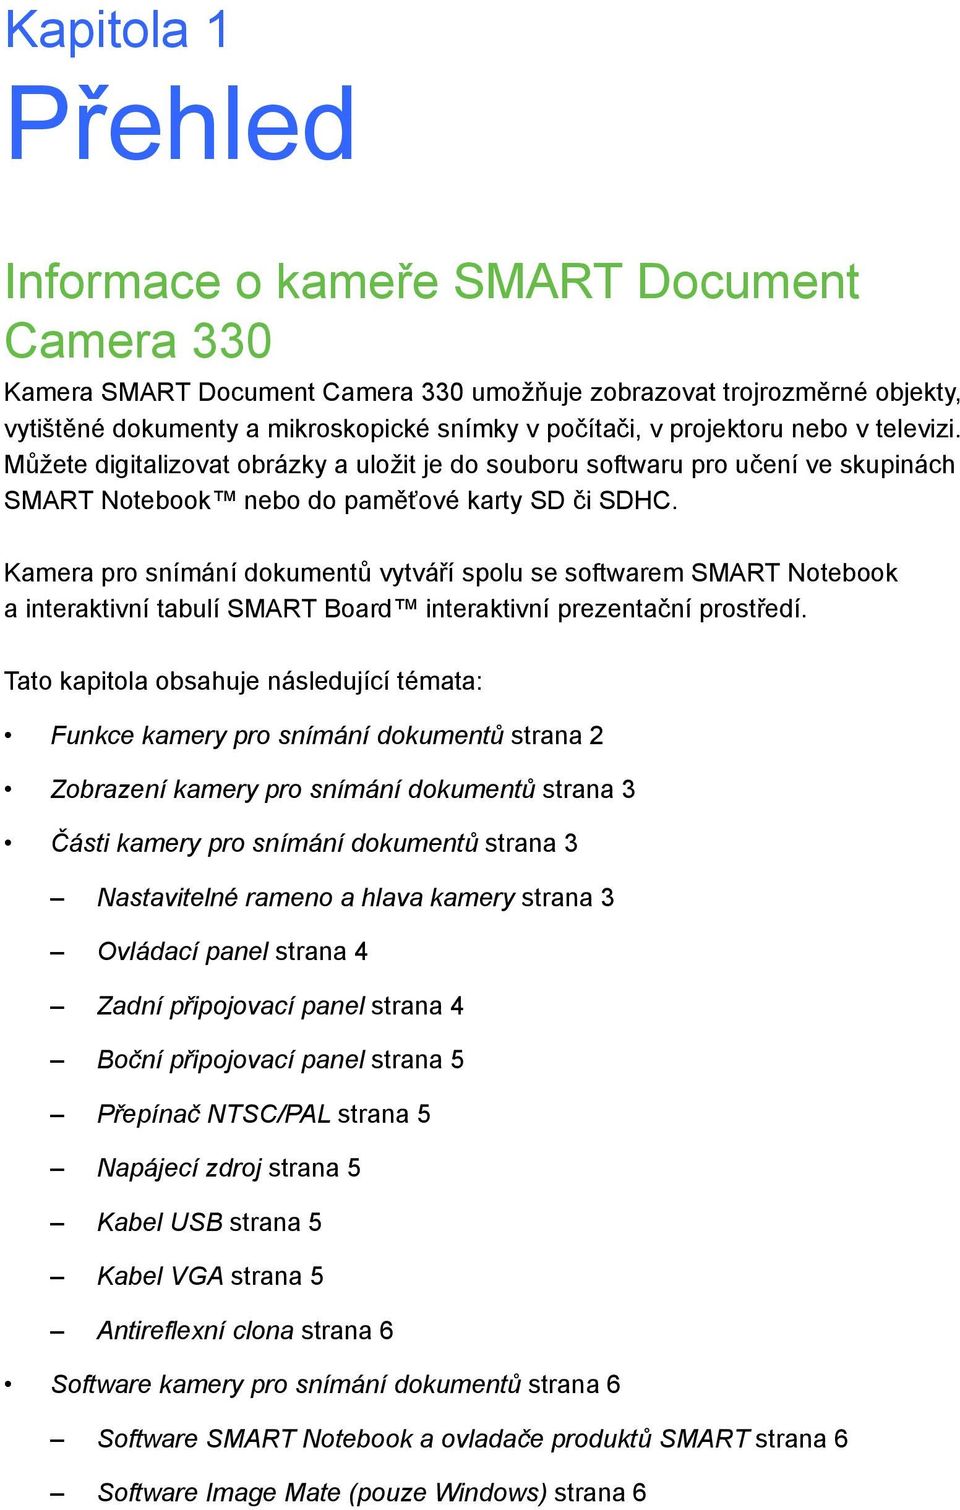 Kamera pro snímání dokumentů vytváří spolu se softwarem SMART Notebook a interaktivní tabulí SMART Board interaktivní prezentační prostředí.